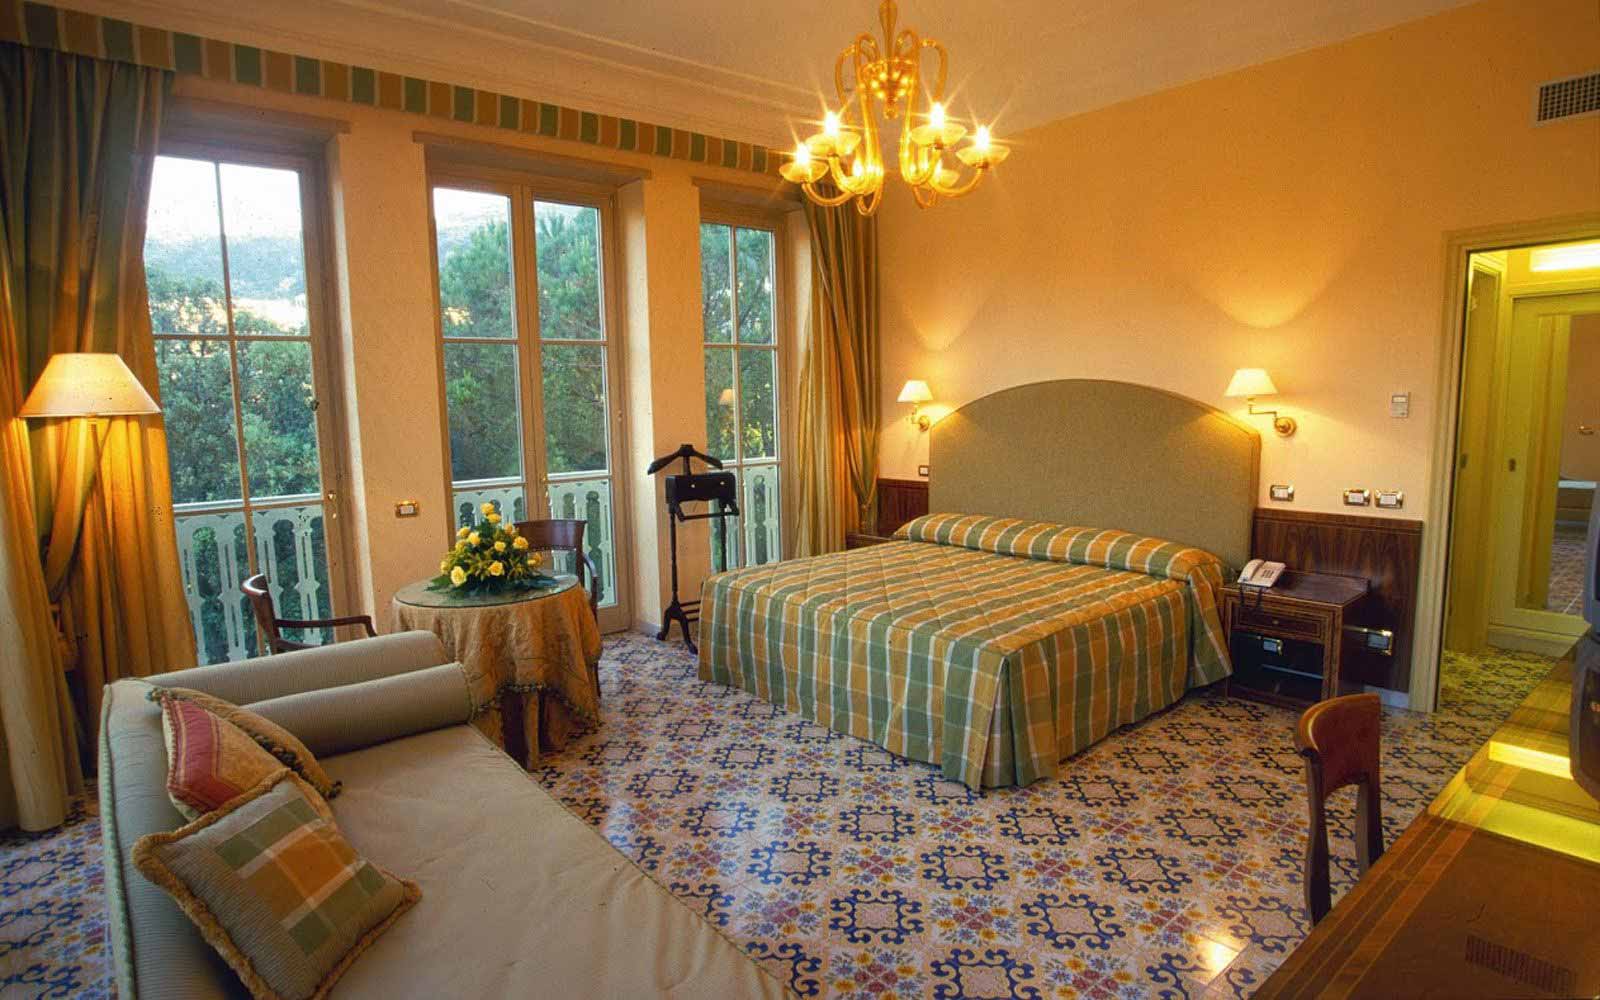 Junior suite at Hotel Antiche Mura